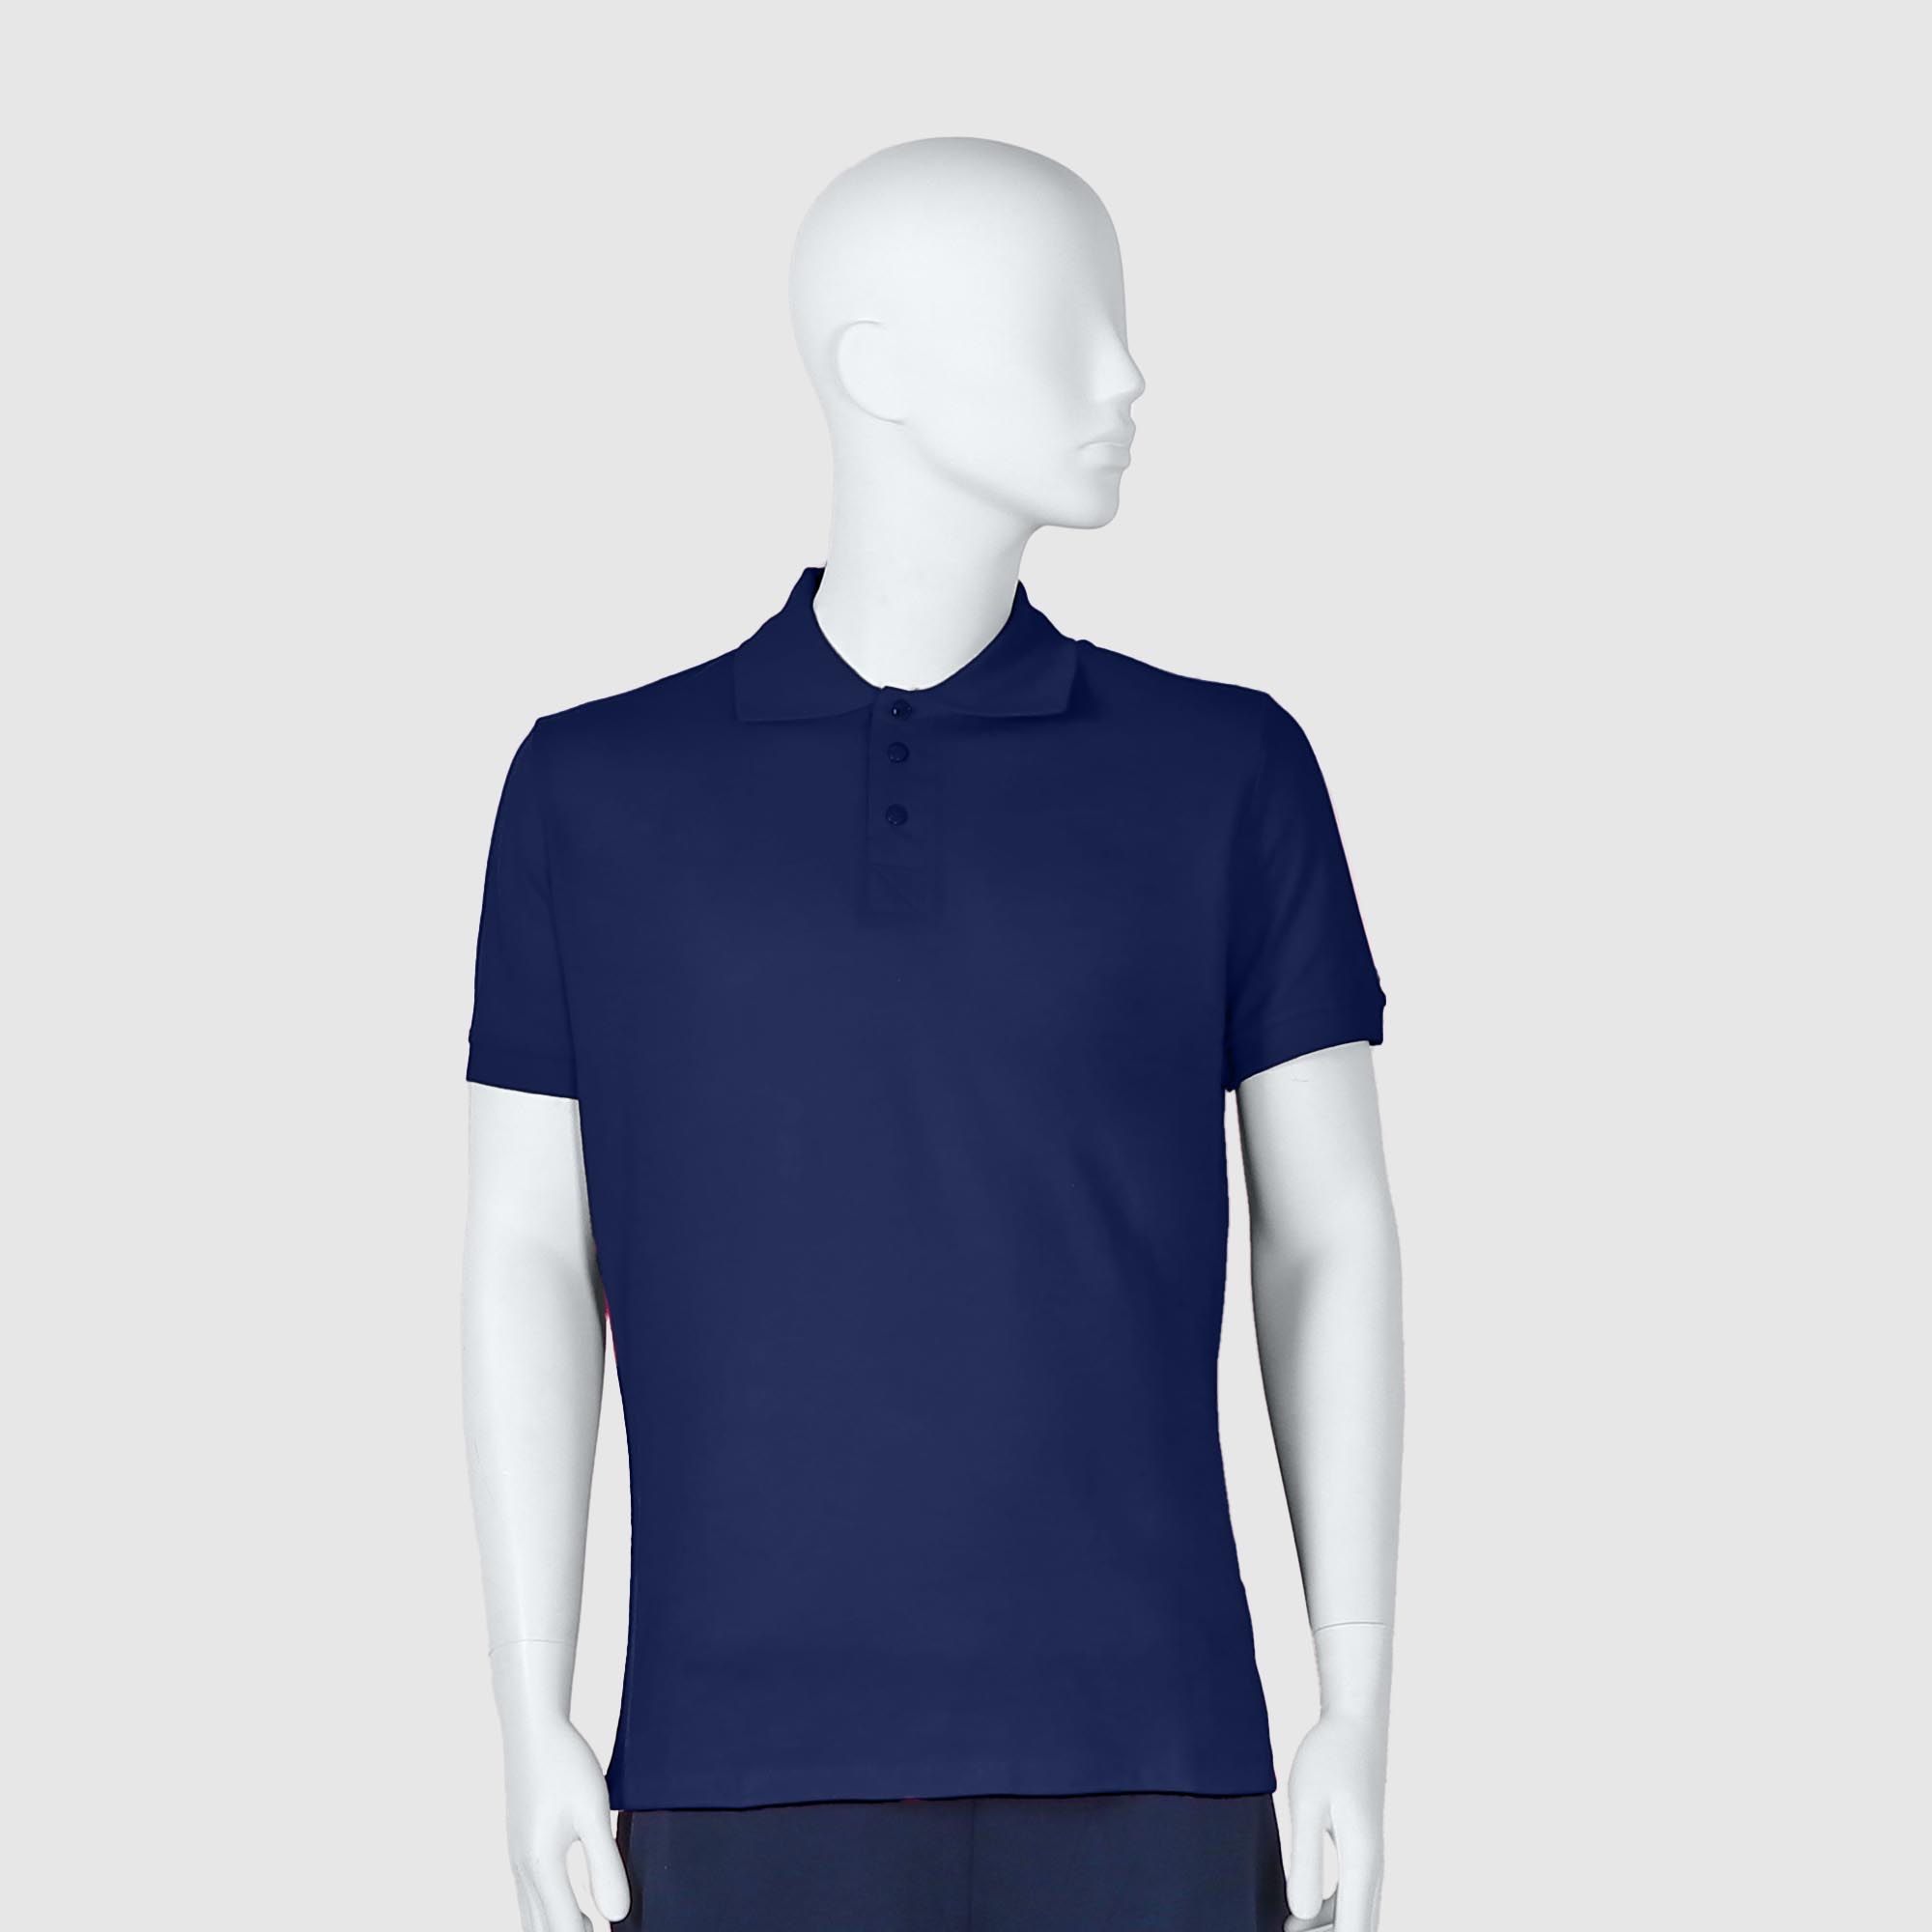 Мужская футболка-поло Diva Teks синяя (DTD-10), цвет синий, размер 44-46